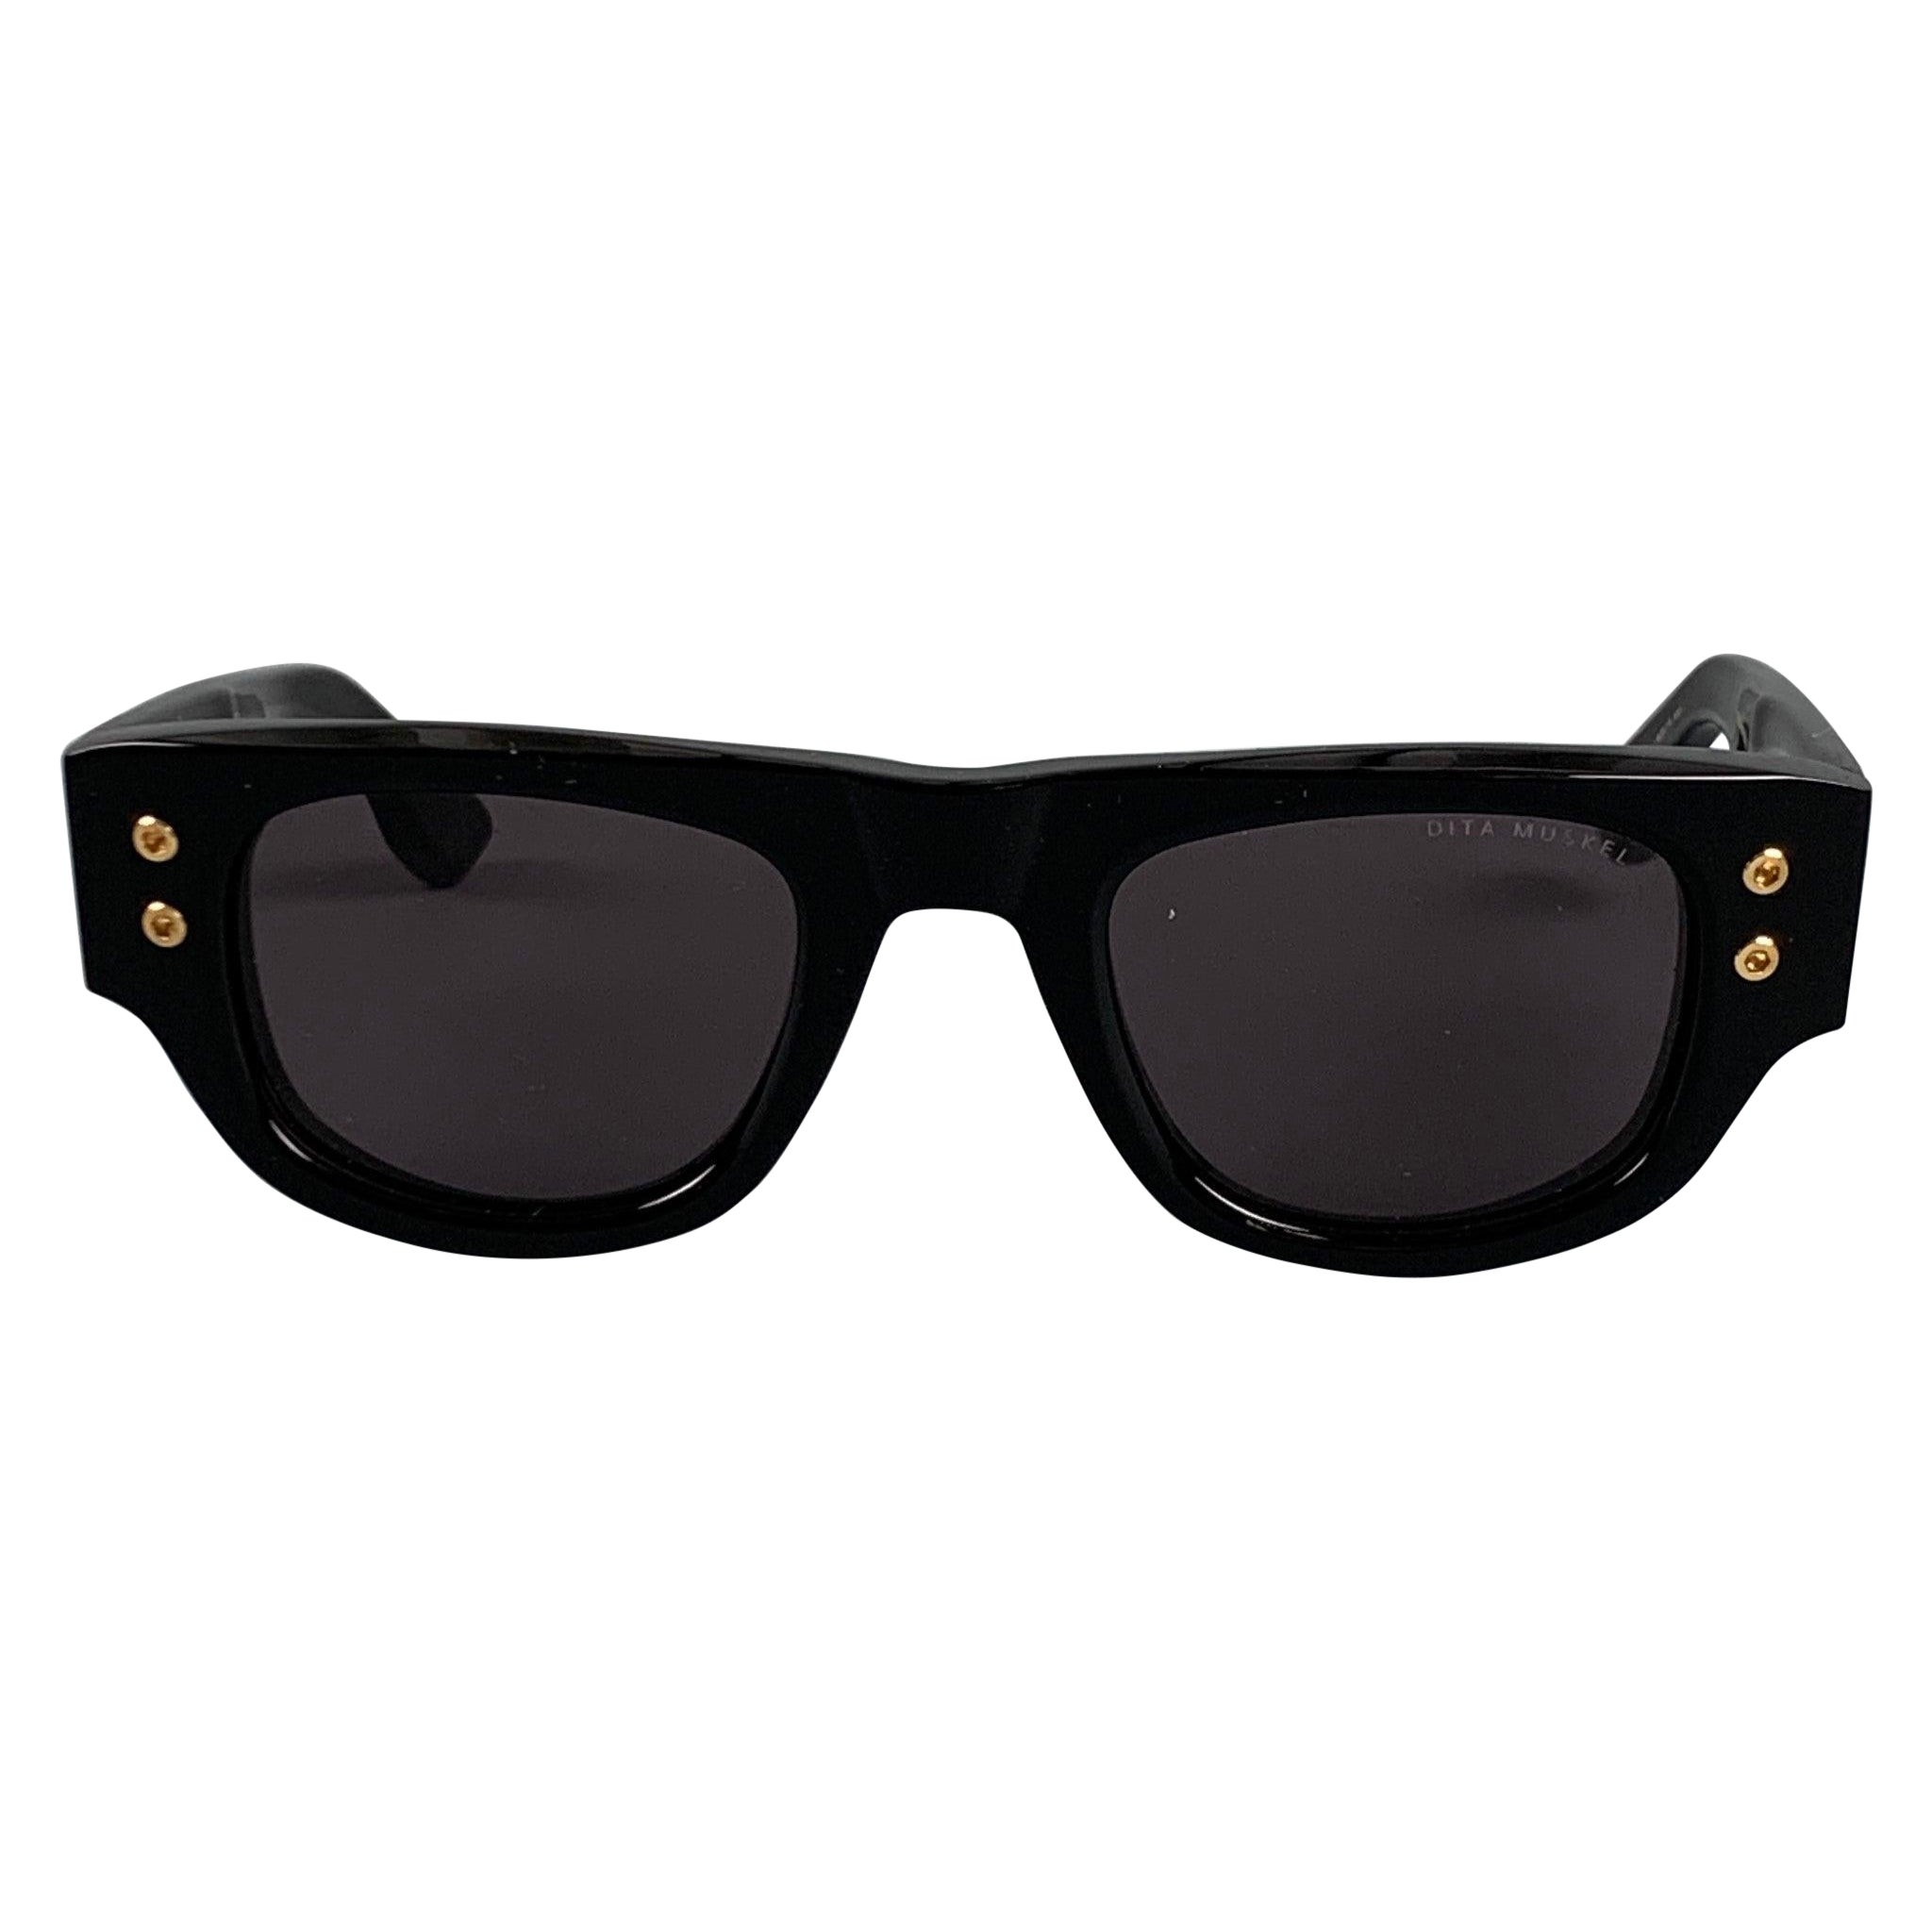 Winston Eyeglasses in Jet Black | Warby Parker